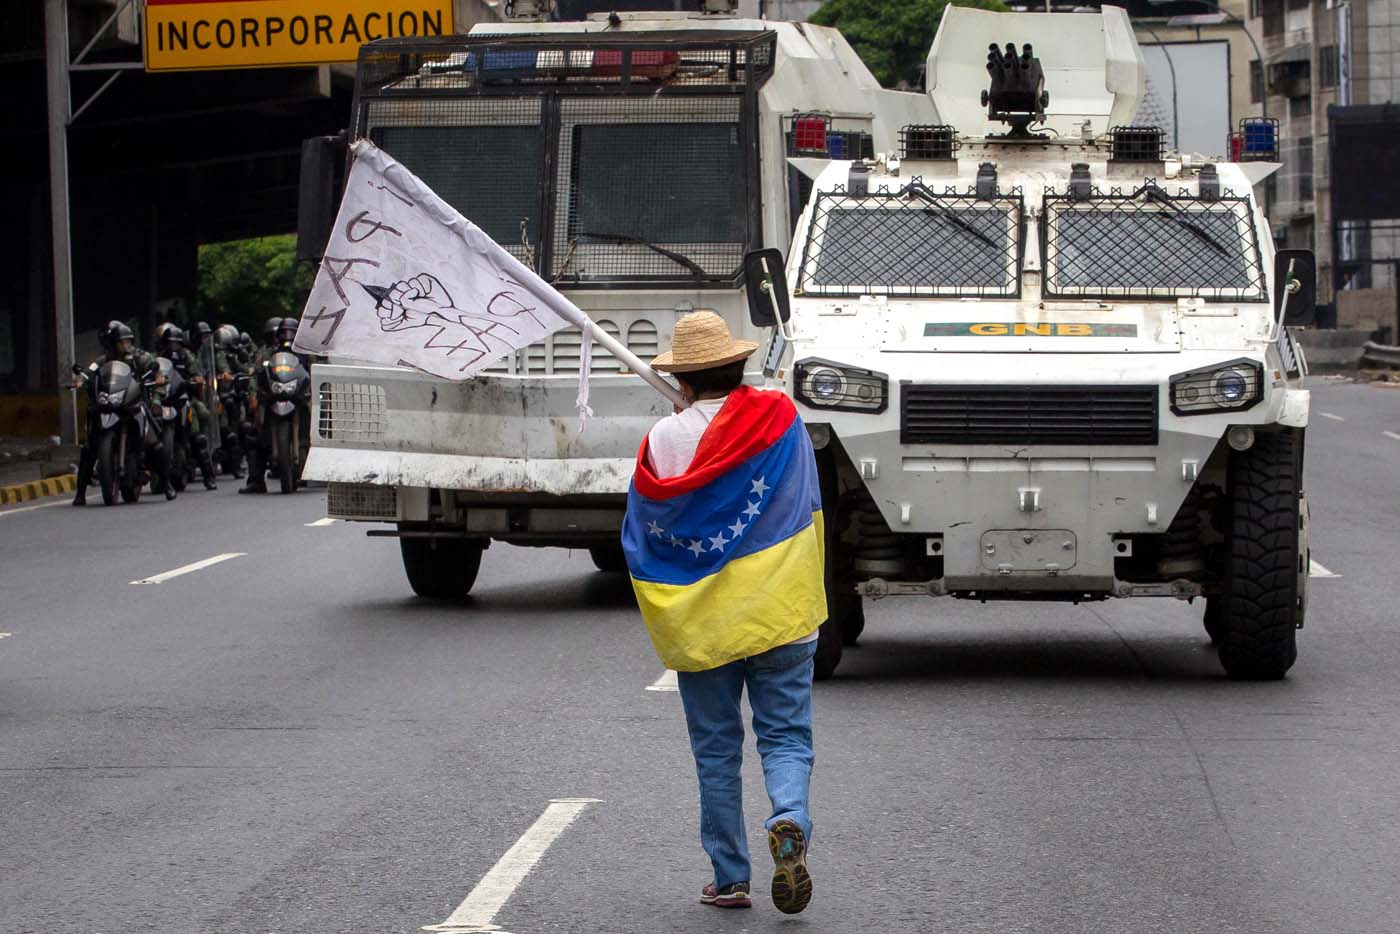 La Oposición denuncia el “secuestro” de las instituciones por el régimen de Maduro